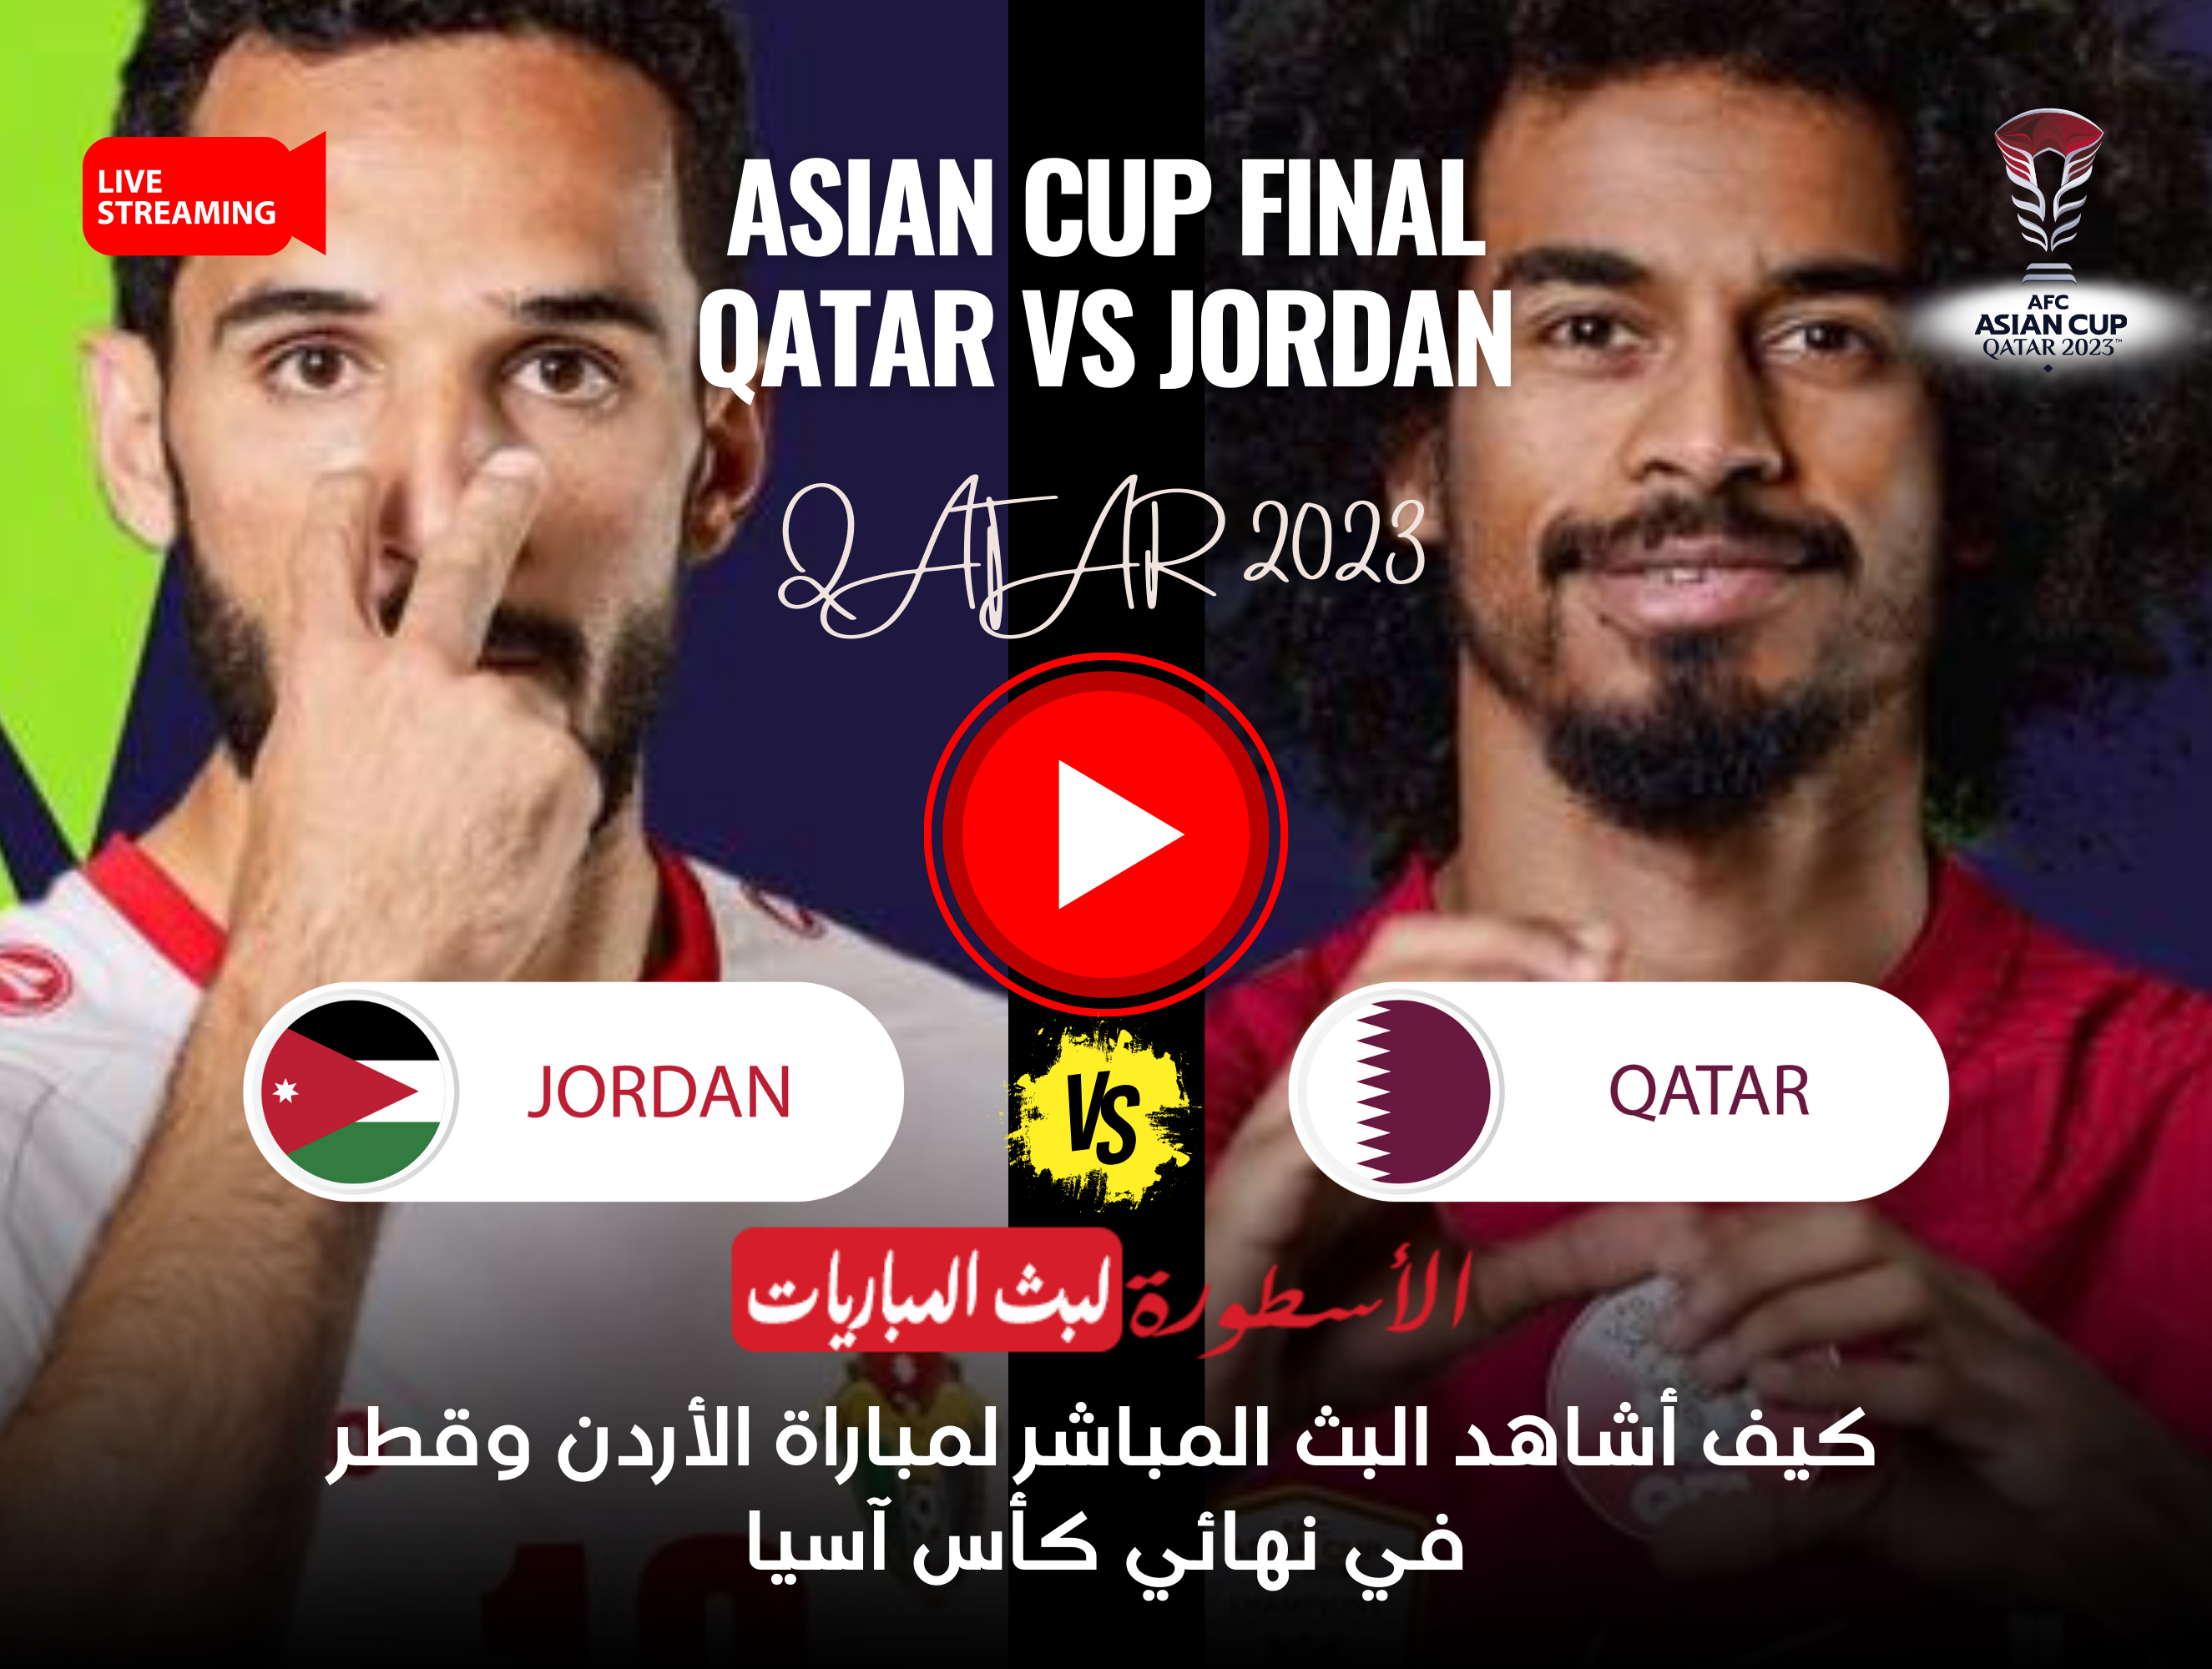 كيف أشاهد البث المباشر لمباراة الأردن وقطر في نهائي كأس آسيا؟